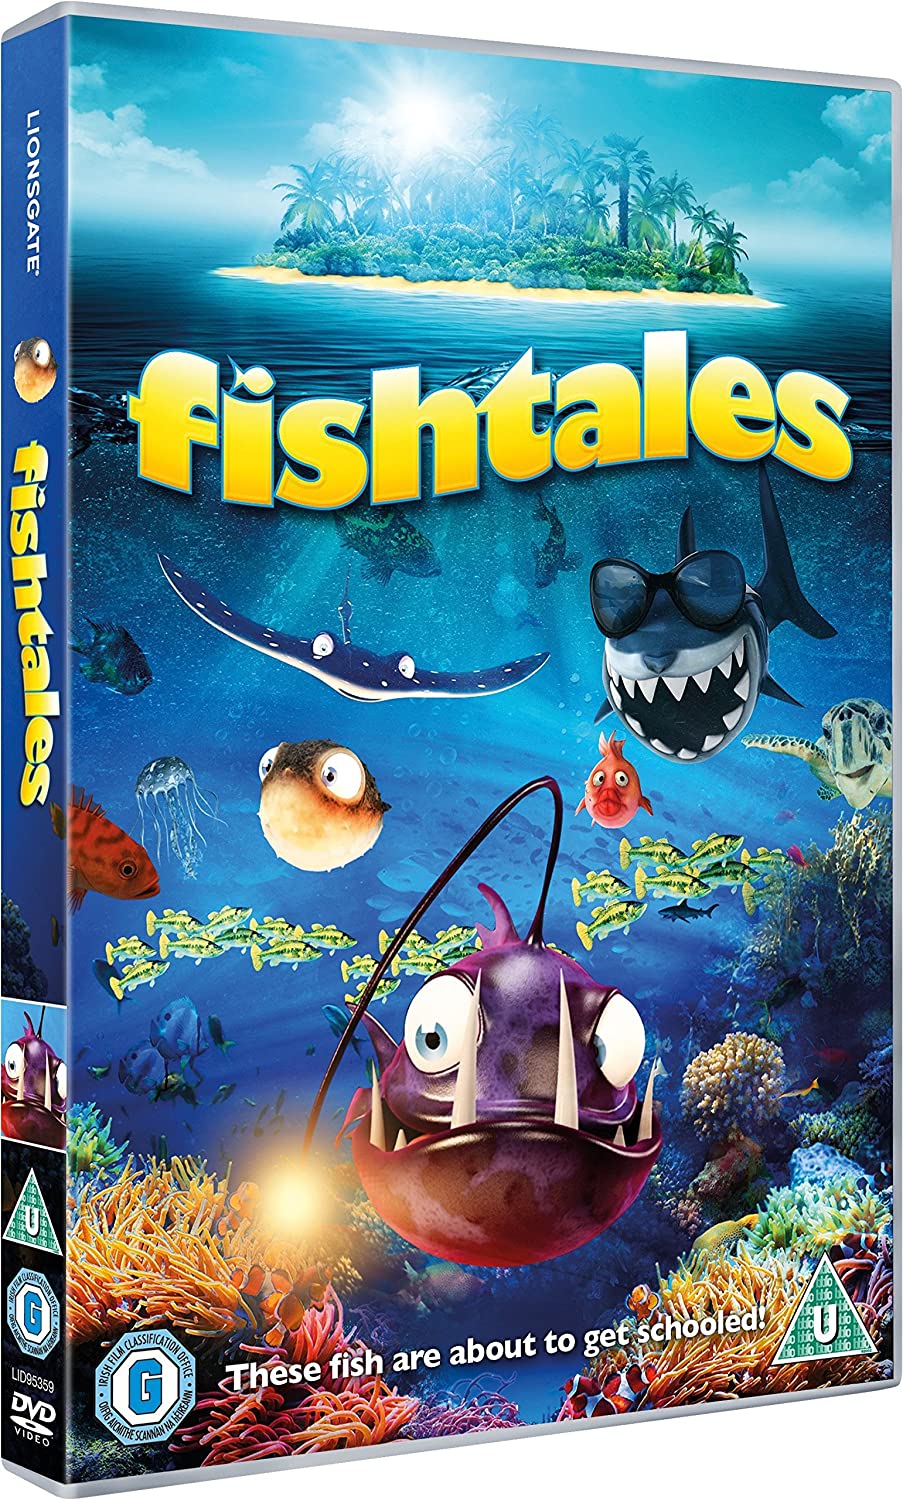 Fishtales - Comedy/Family [DVD]